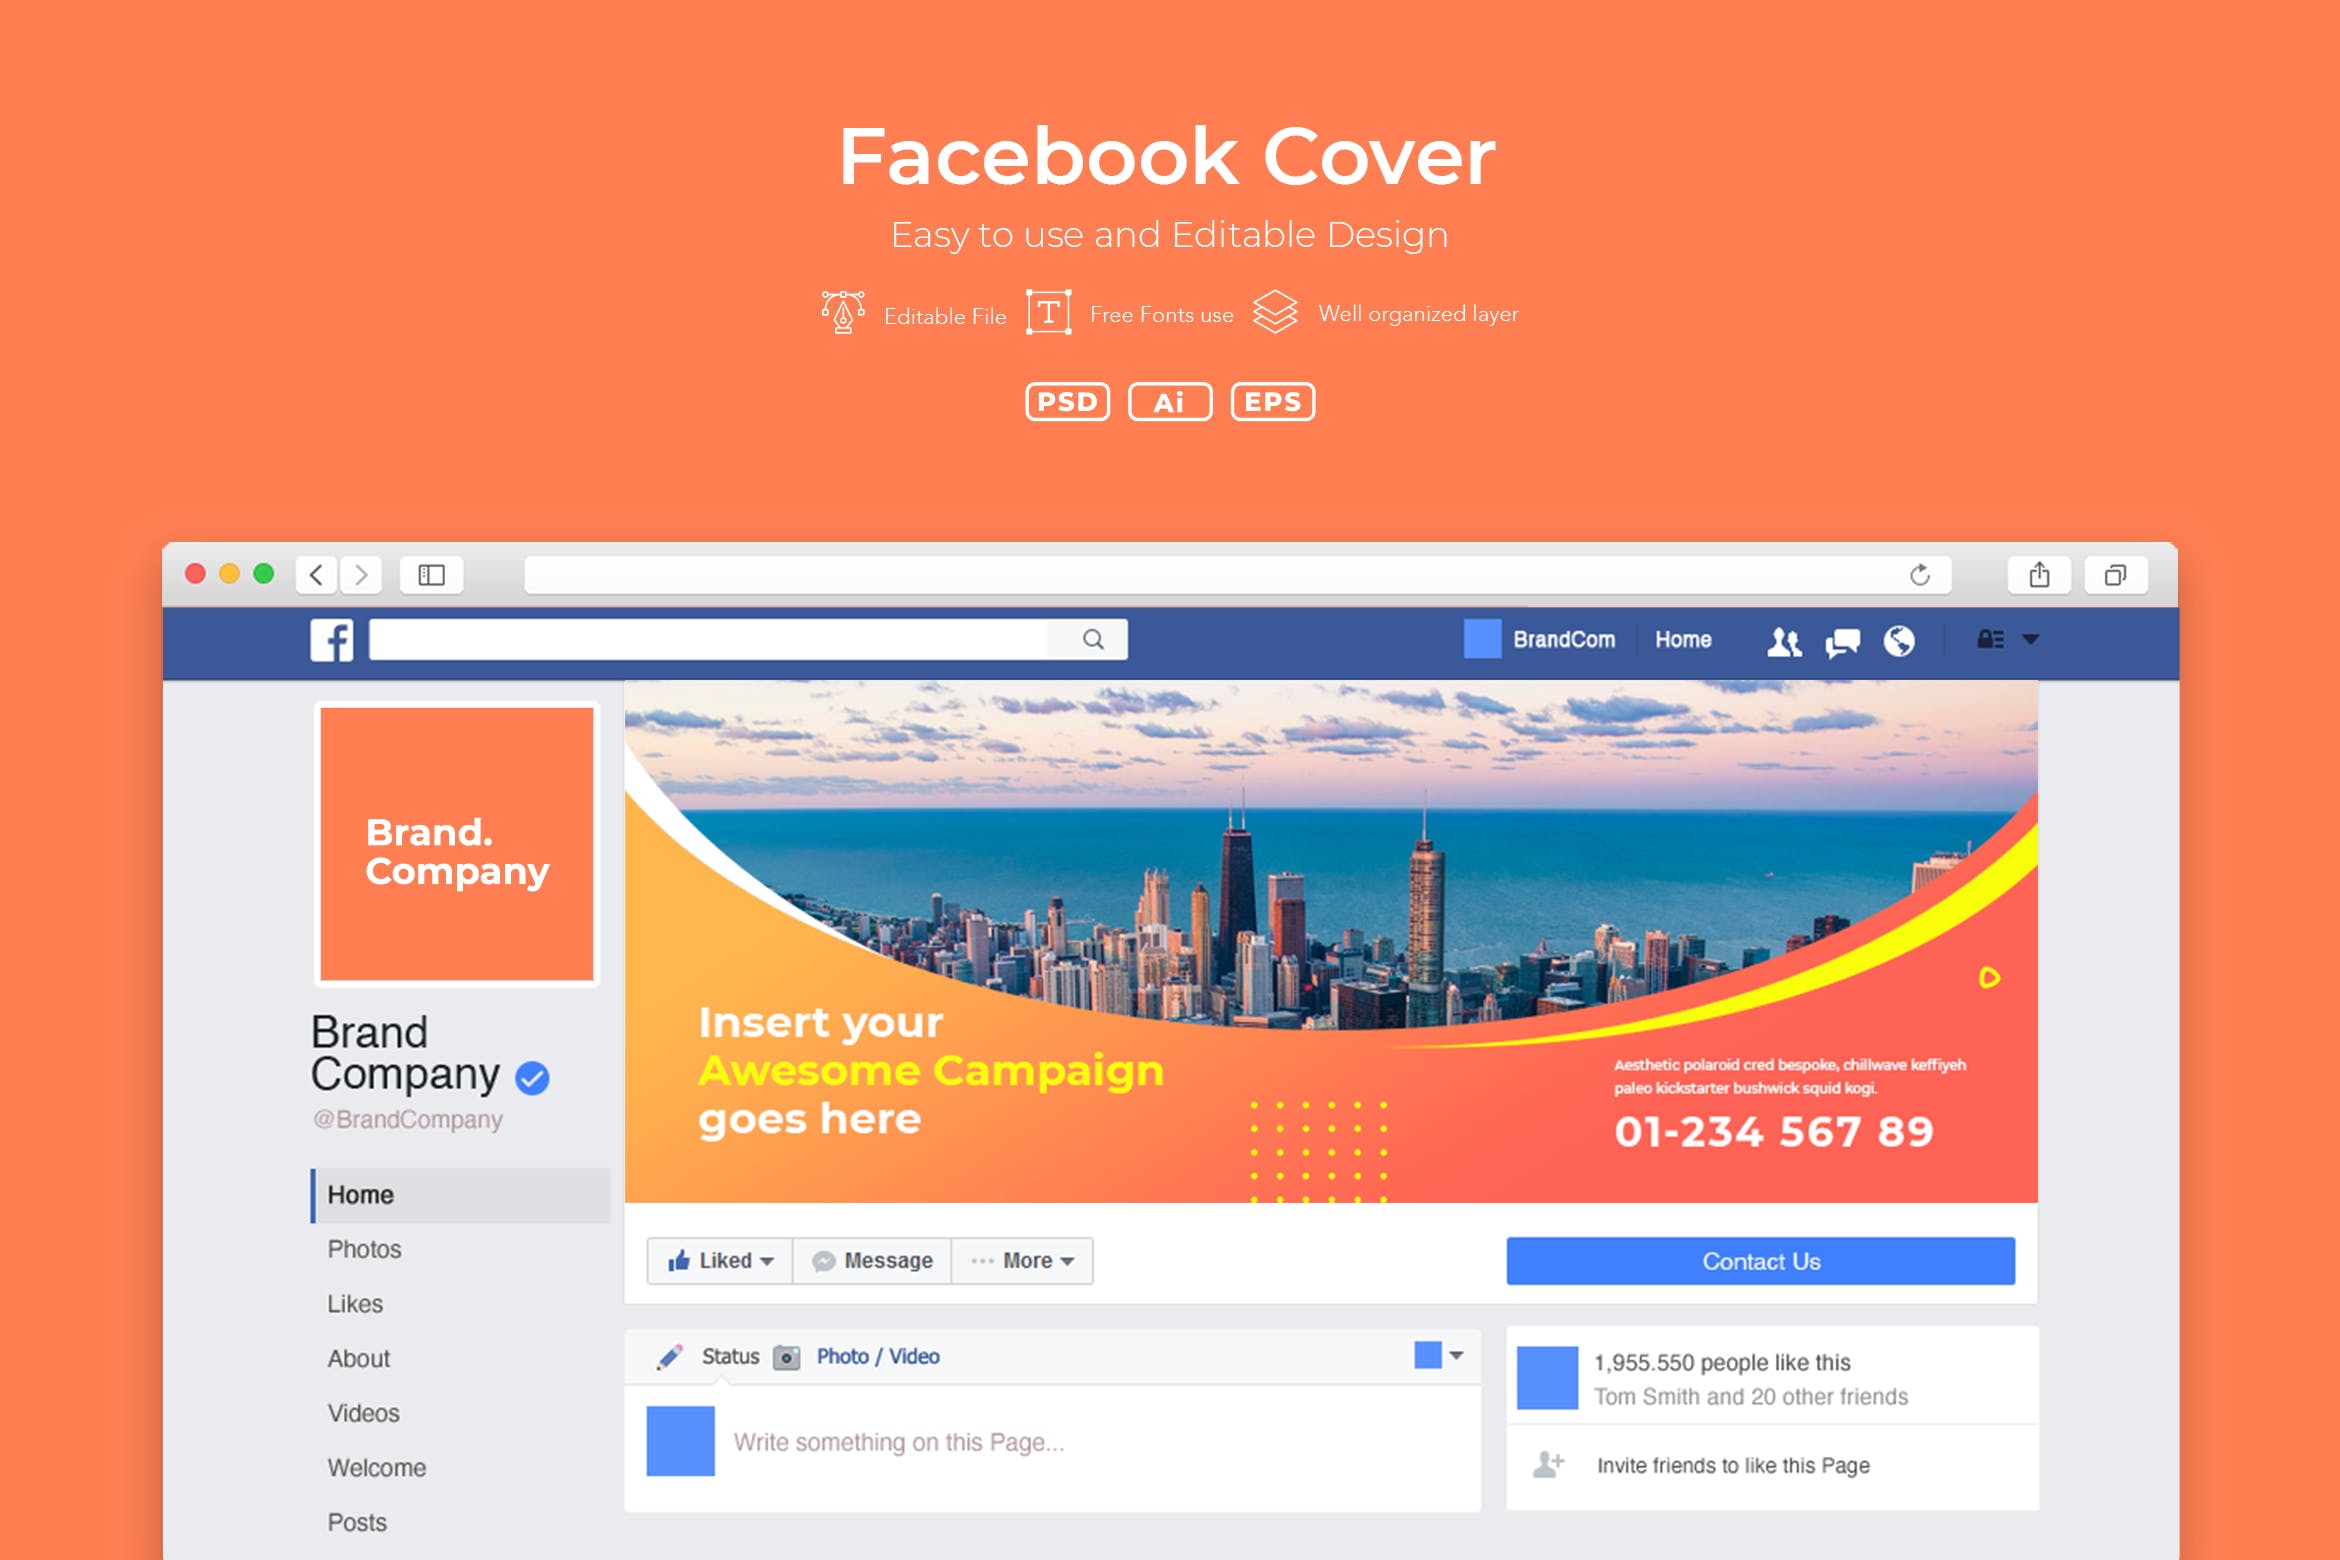 企业Facebook账号主页封面设计模板蚂蚁素材精选v2.3 ADL Facebook Cover.v2.3插图